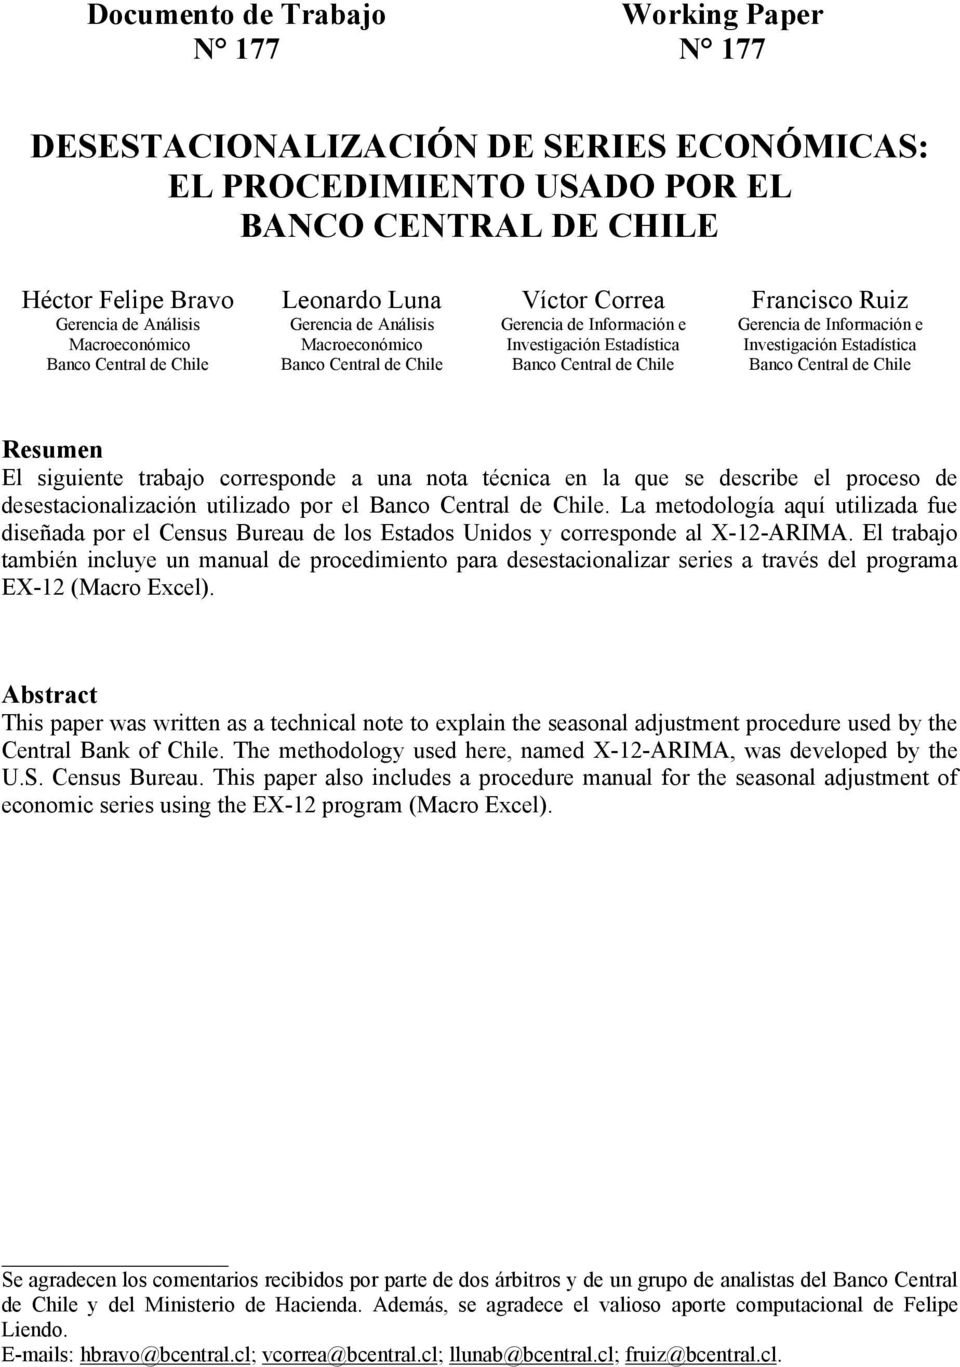 Gerencia de Información e Invesigación Esadísica Banco Cenral de Chile Resumen El siguiene rabajo corresponde a una noa écnica en la que se describe el proceso de desesacionalización uilizado por el